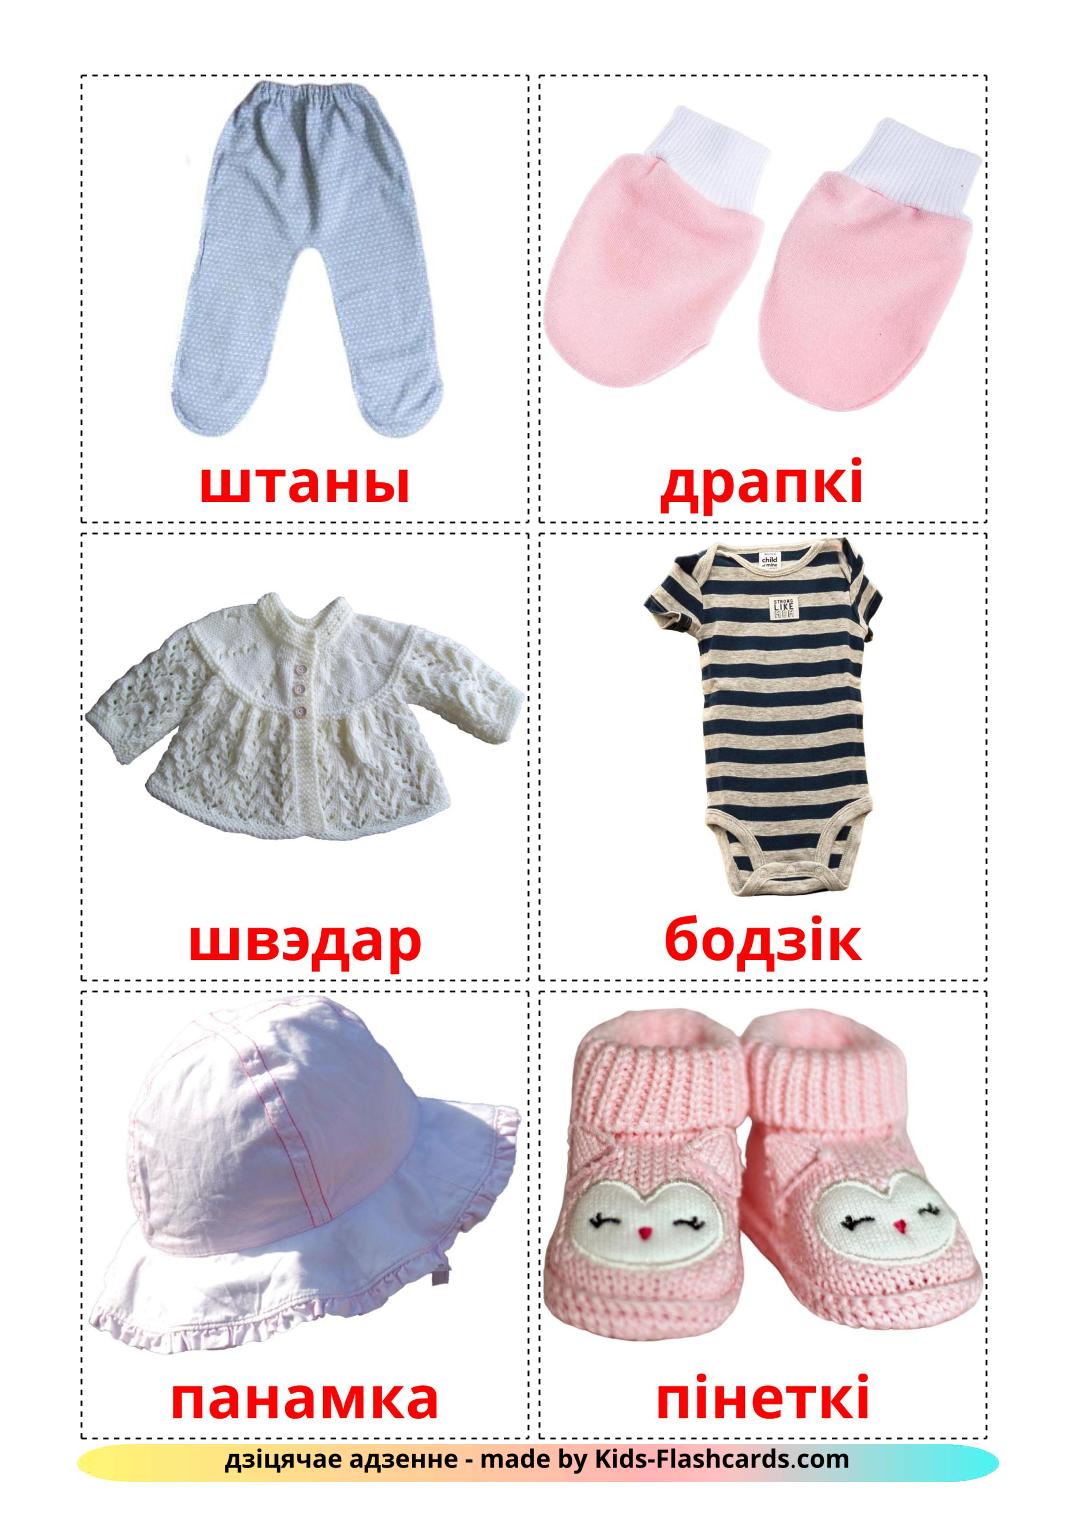 Детская одежда - 11 Карточек Домана на беларуском